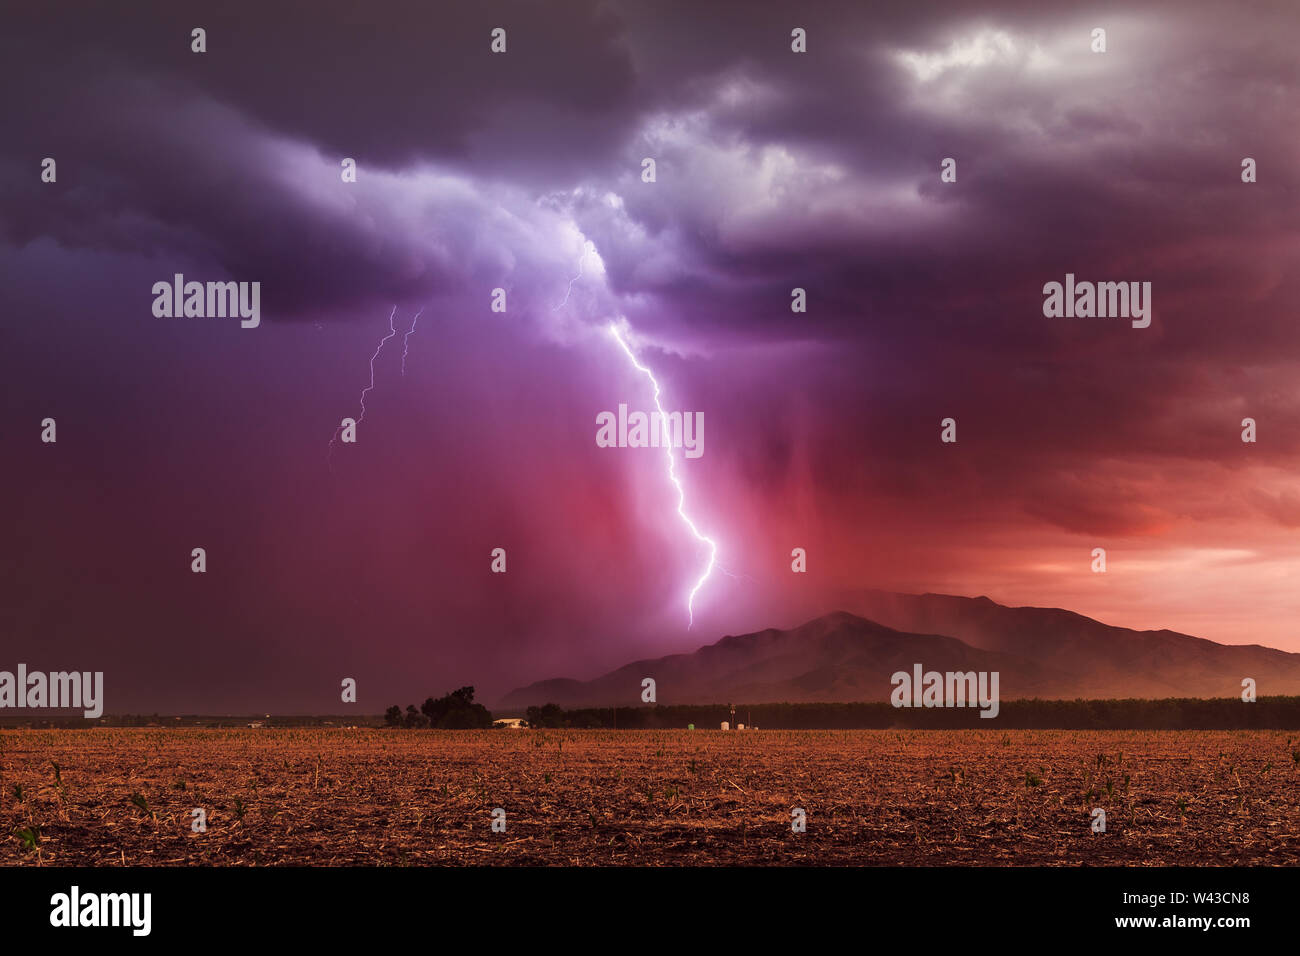 Ein Blitzschlag trifft die Dragoon Mountains, während sich bei Sonnenuntergang ein Monsunsturm durch den Südosten Arizonas zieht Stockfoto